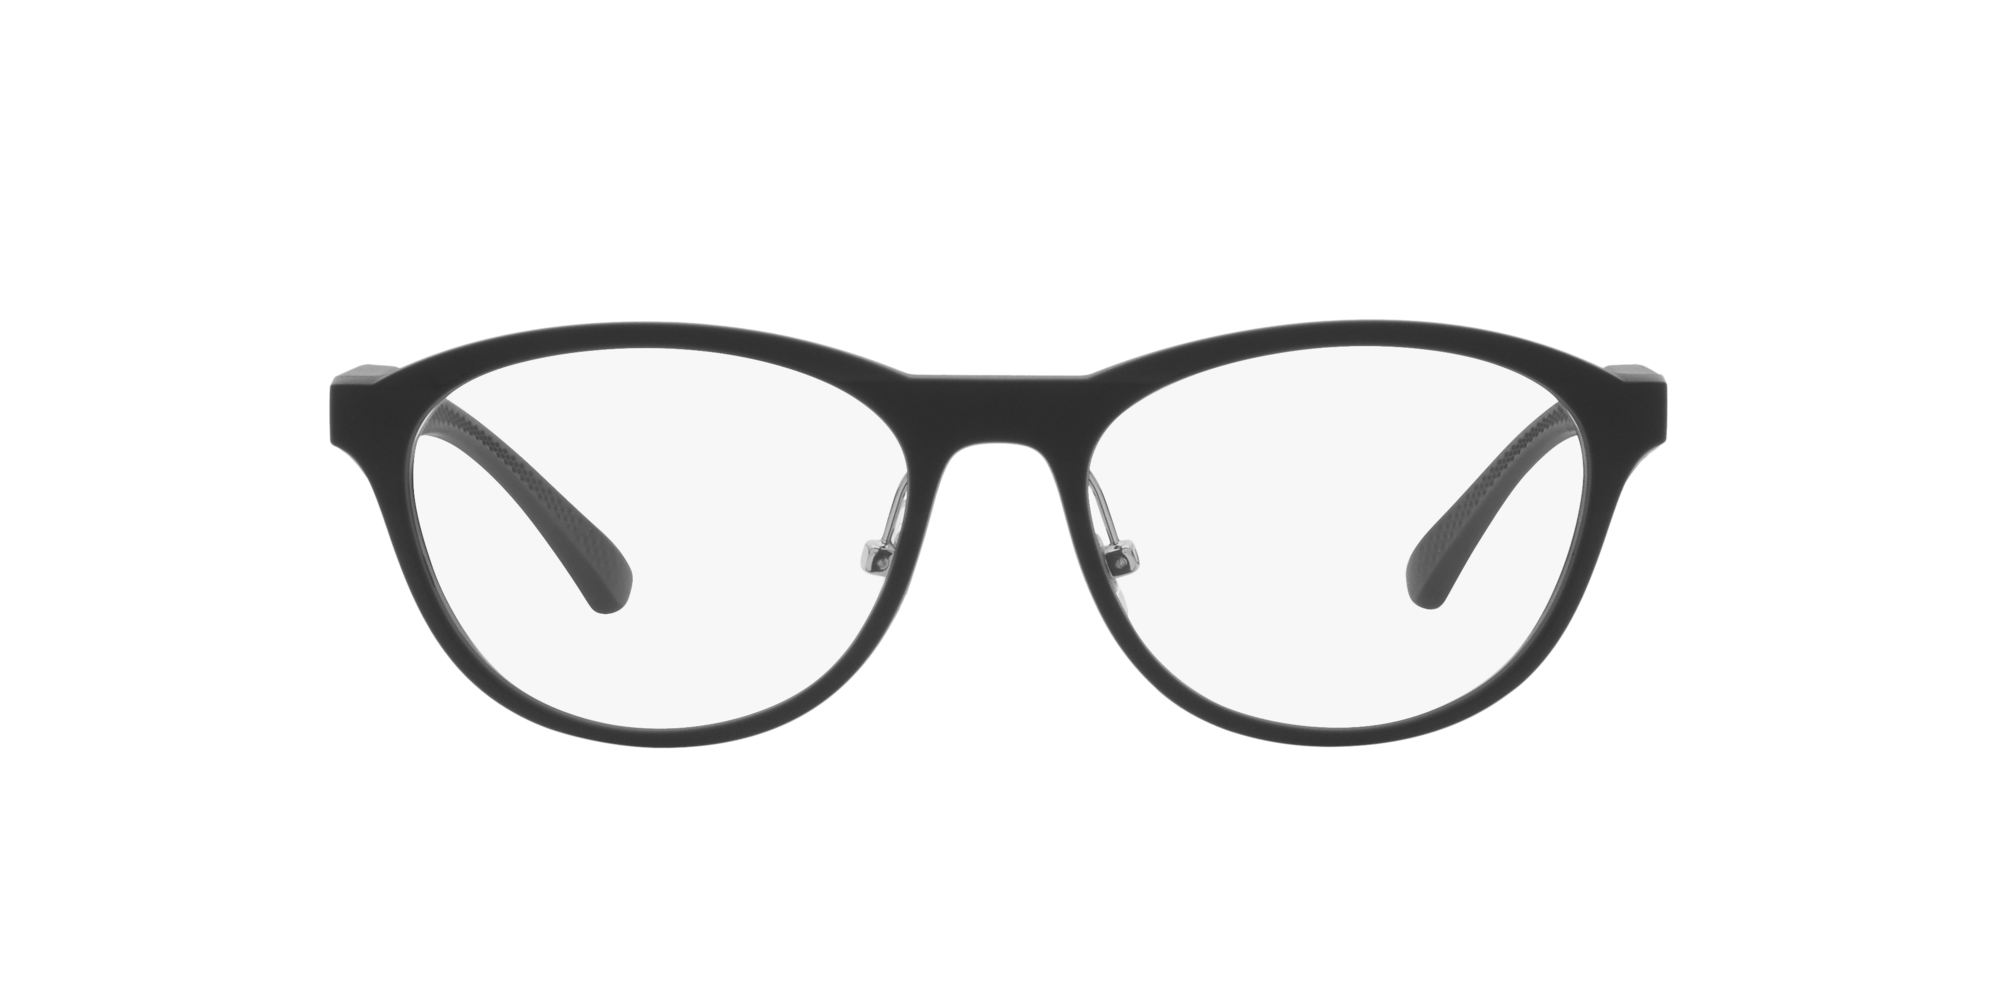 Das Bild zeigt die Korrektionsbrille OX8057 805701 von der Marke Oakley  in  schwarz satiniert.